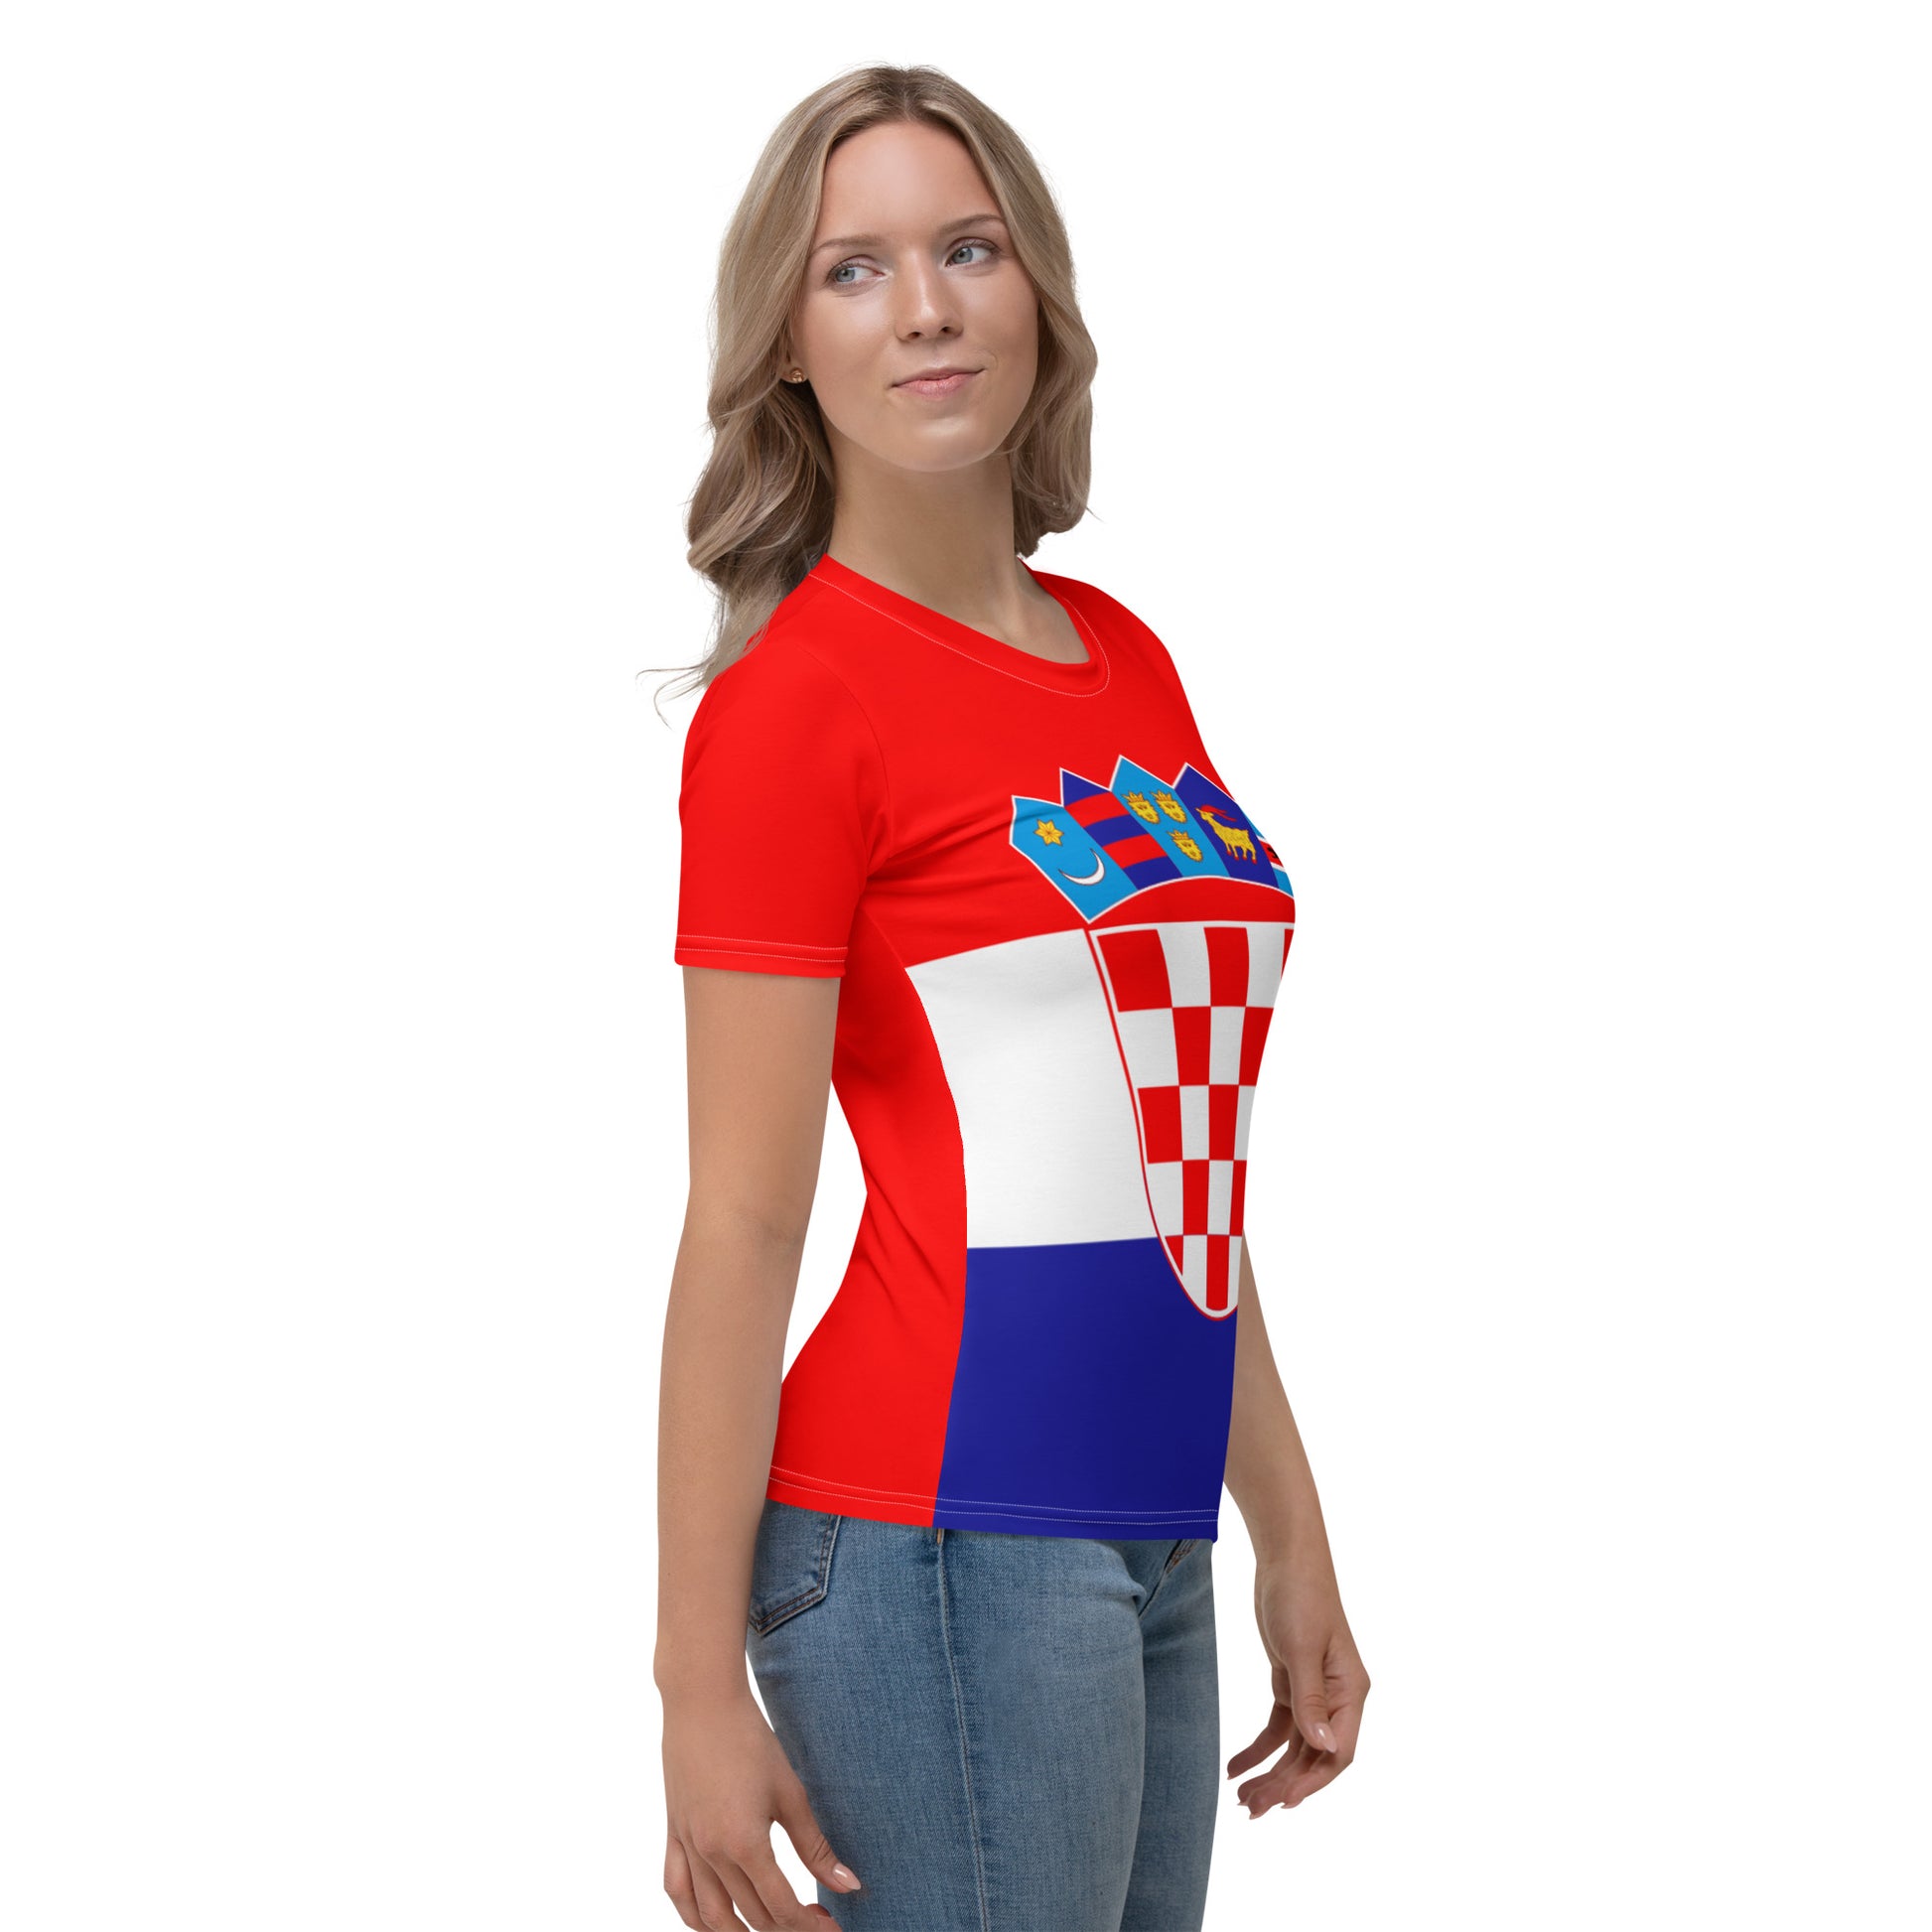 Croatian Flag Shirt / Croatia Style Clothing For Women